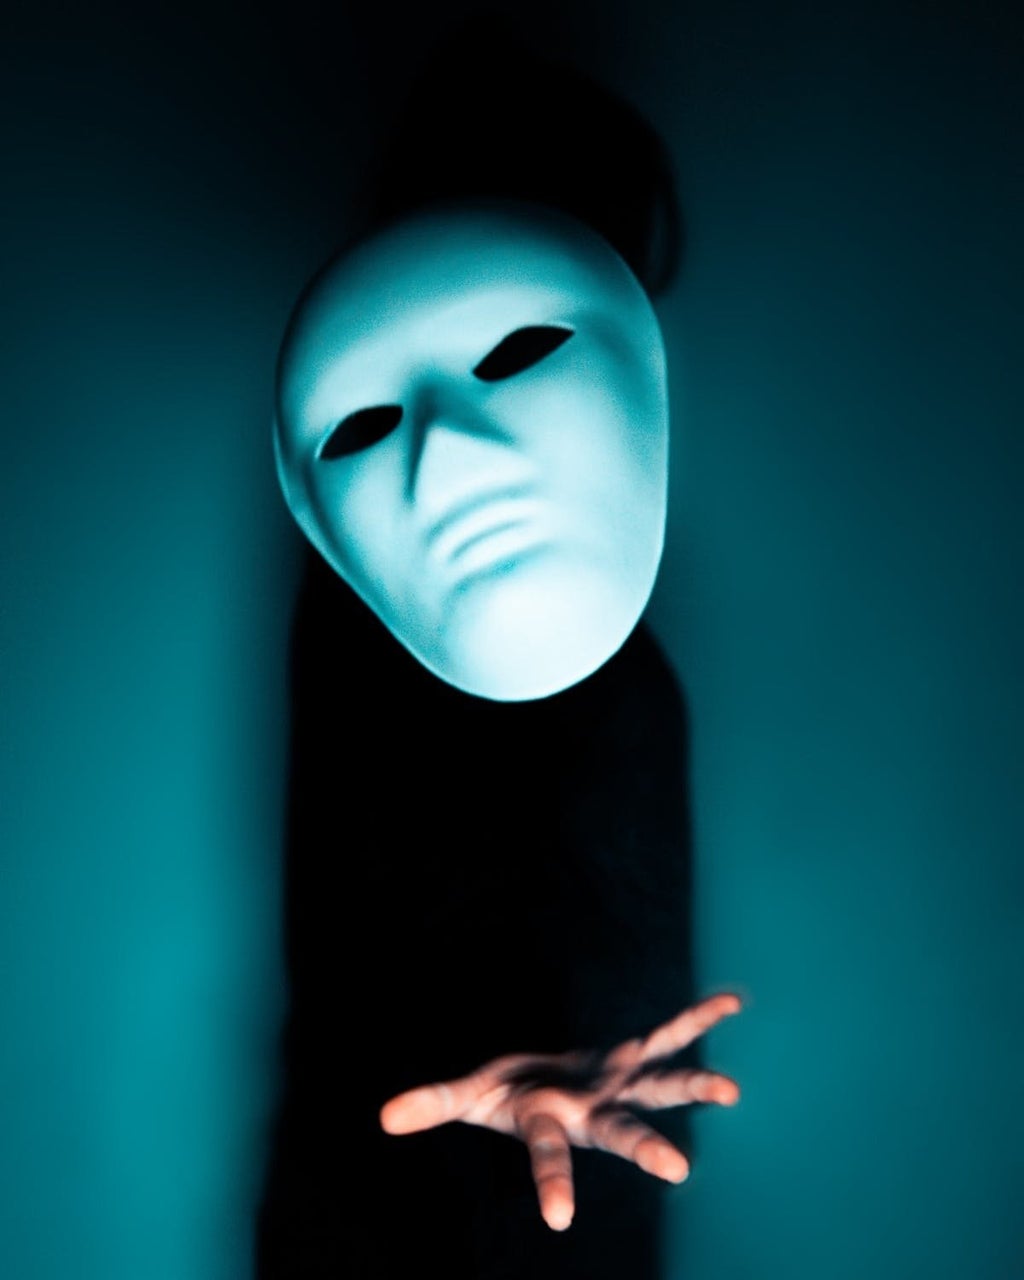 Masked identity